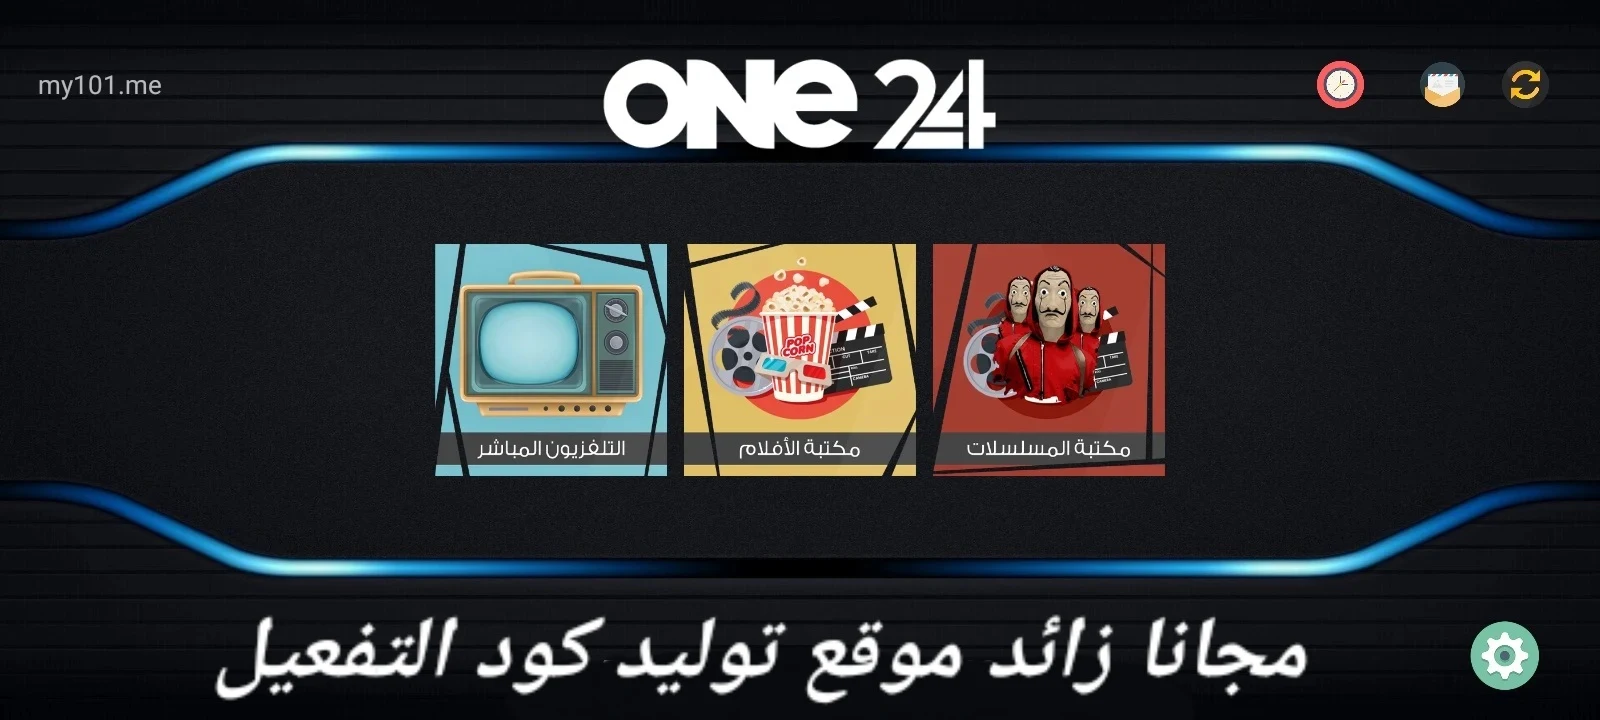 تطبيق ONE 24 TV APK أخر نسخة للاندرويد